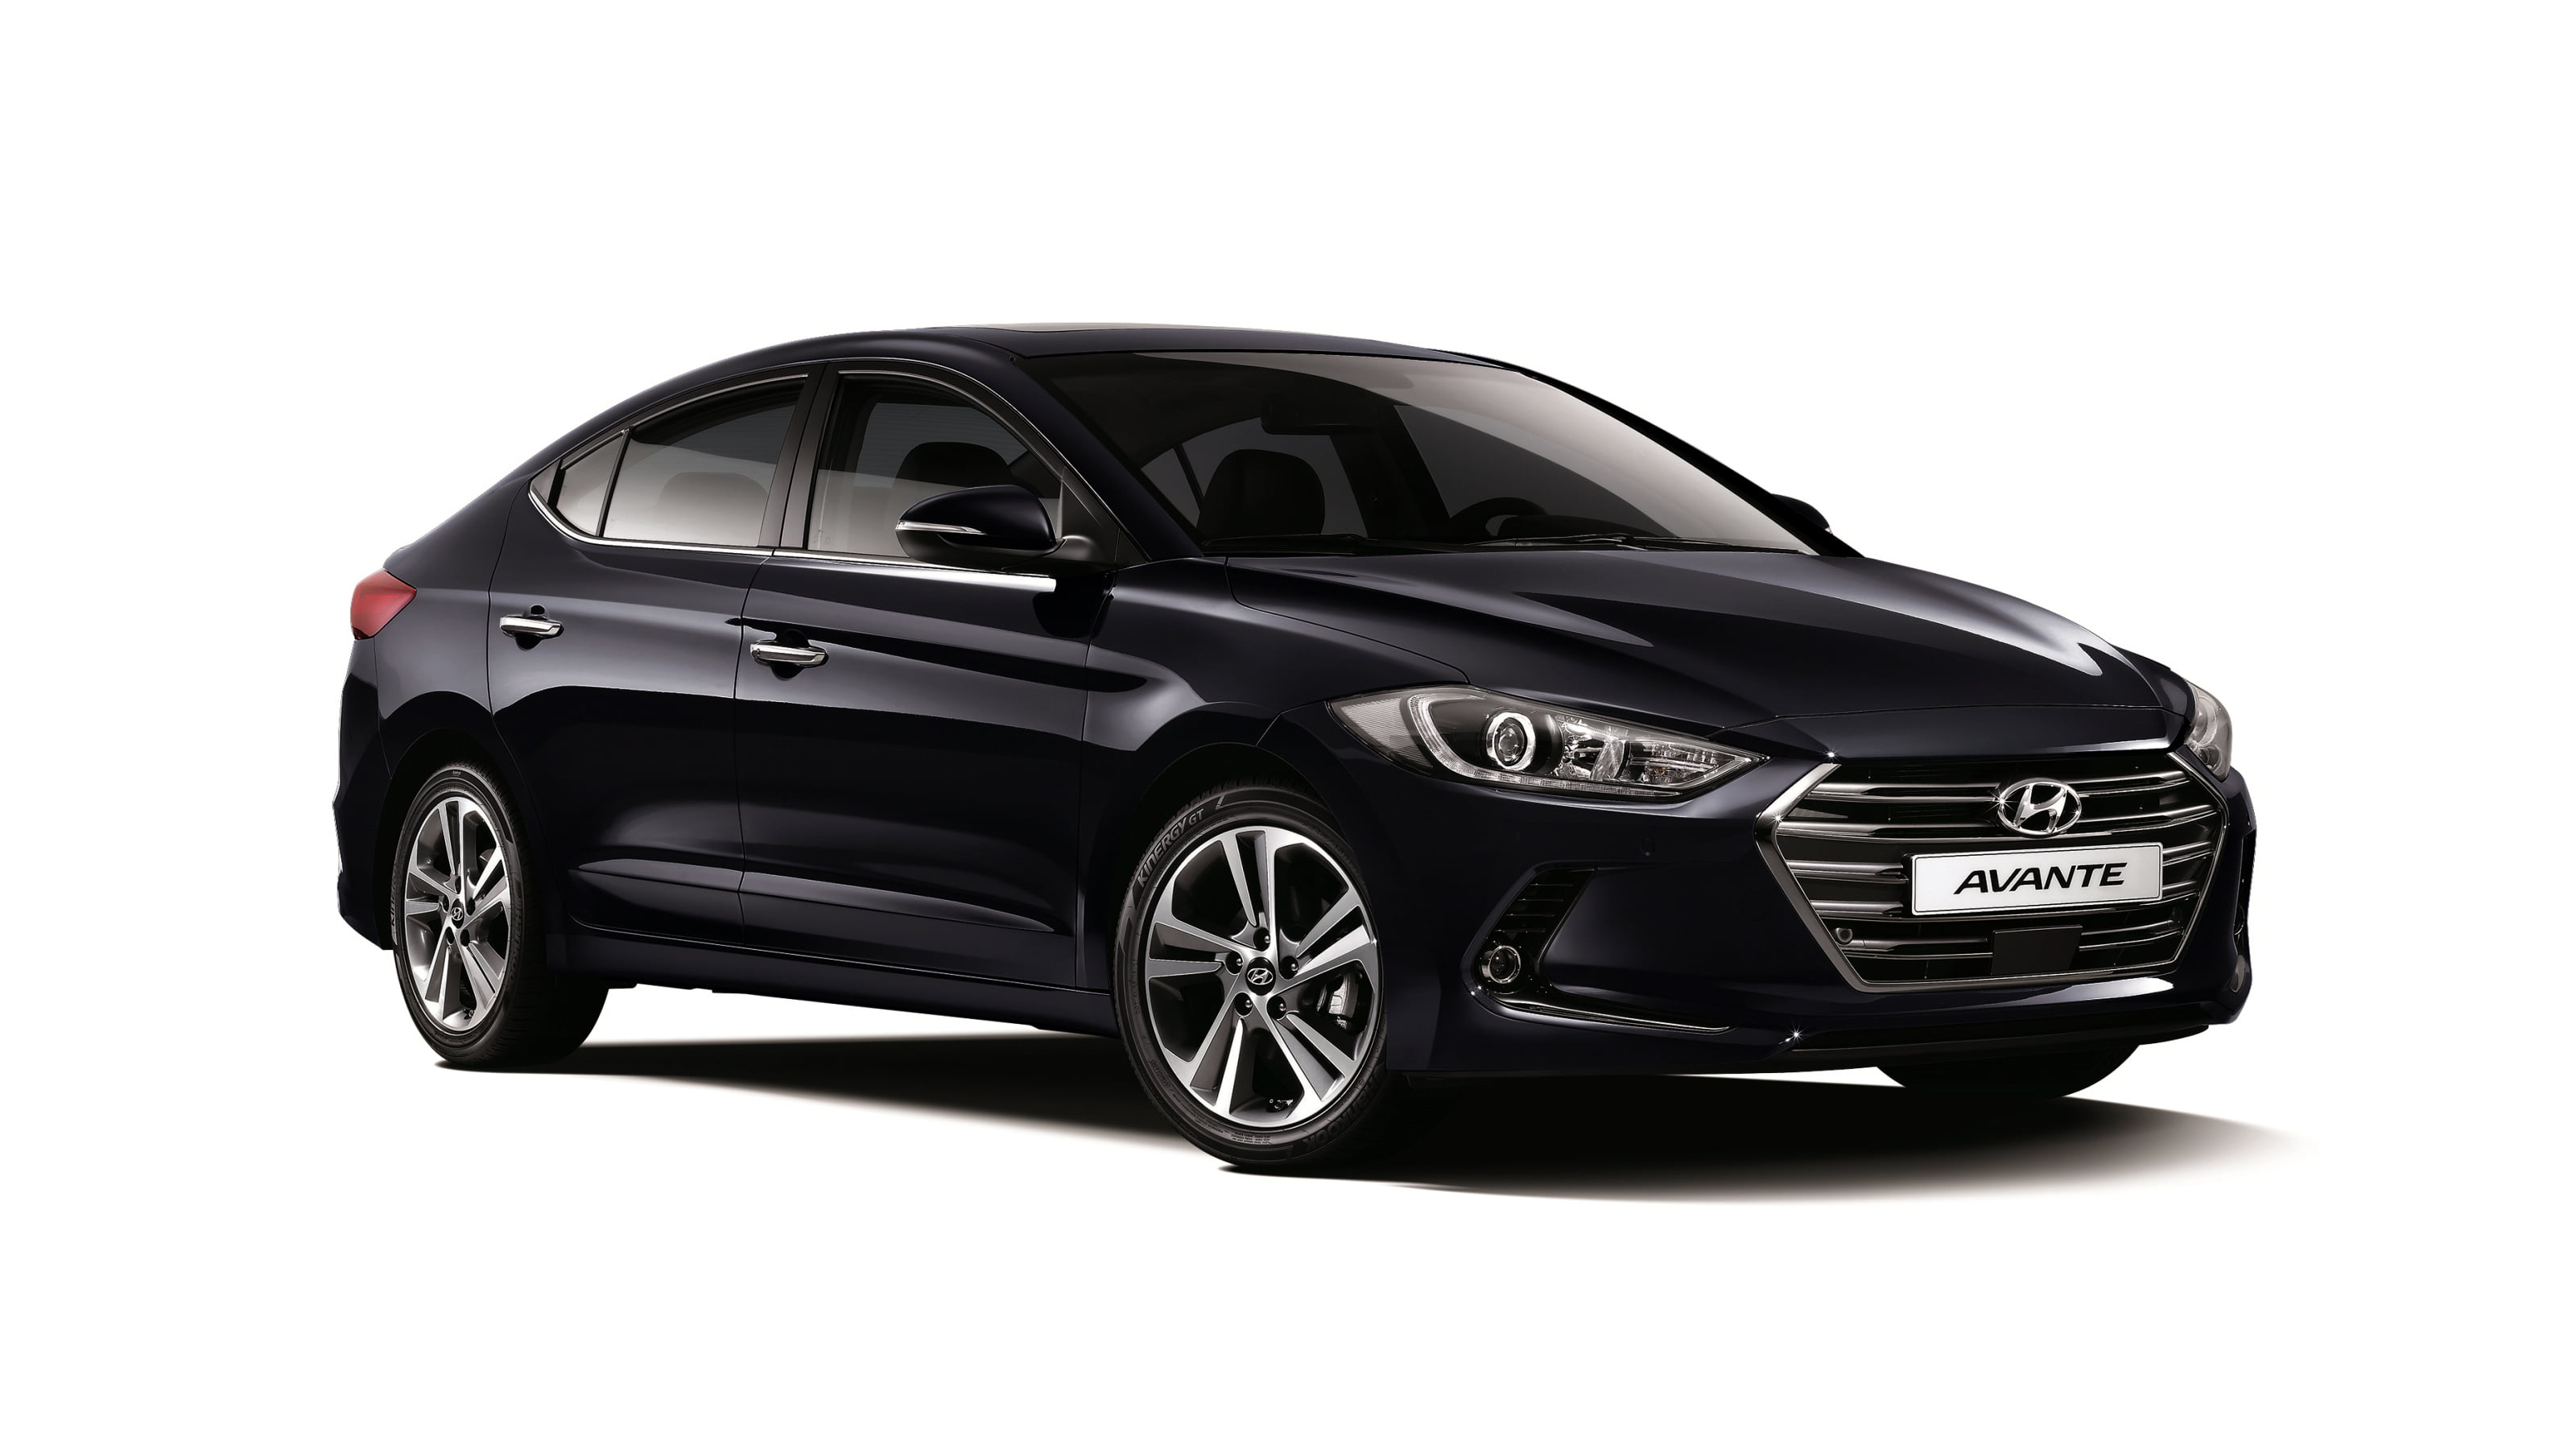 black Hyundai sedan, elantra, avante, car, land Vehicle, transportation